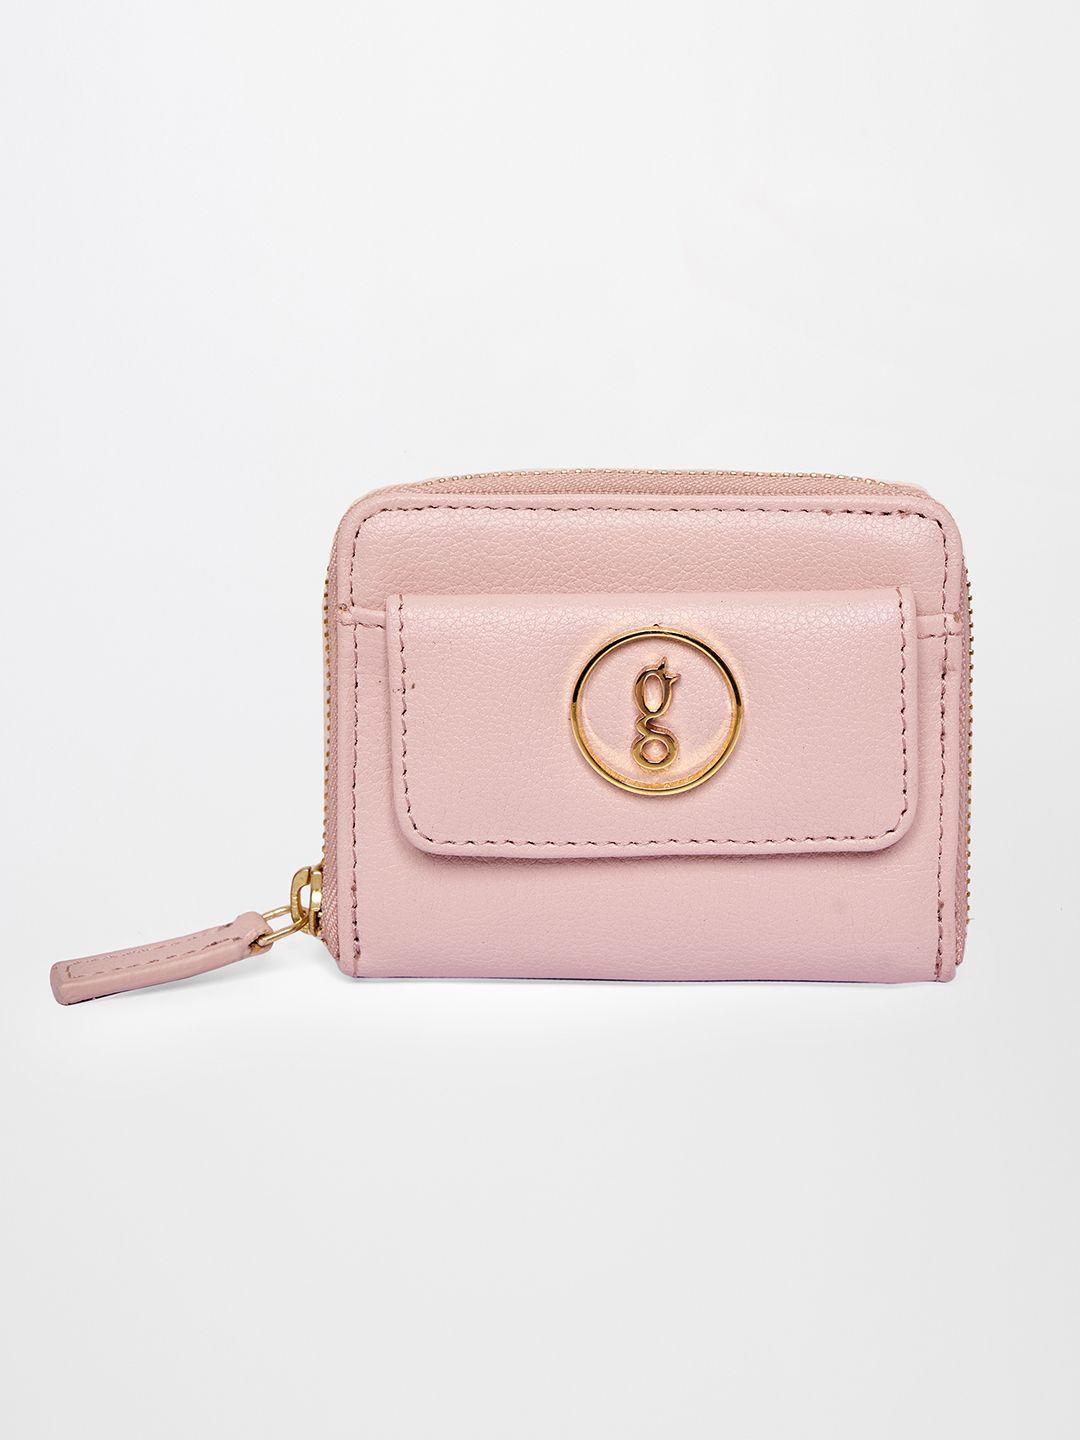 global desi nude-coloured purse clutch